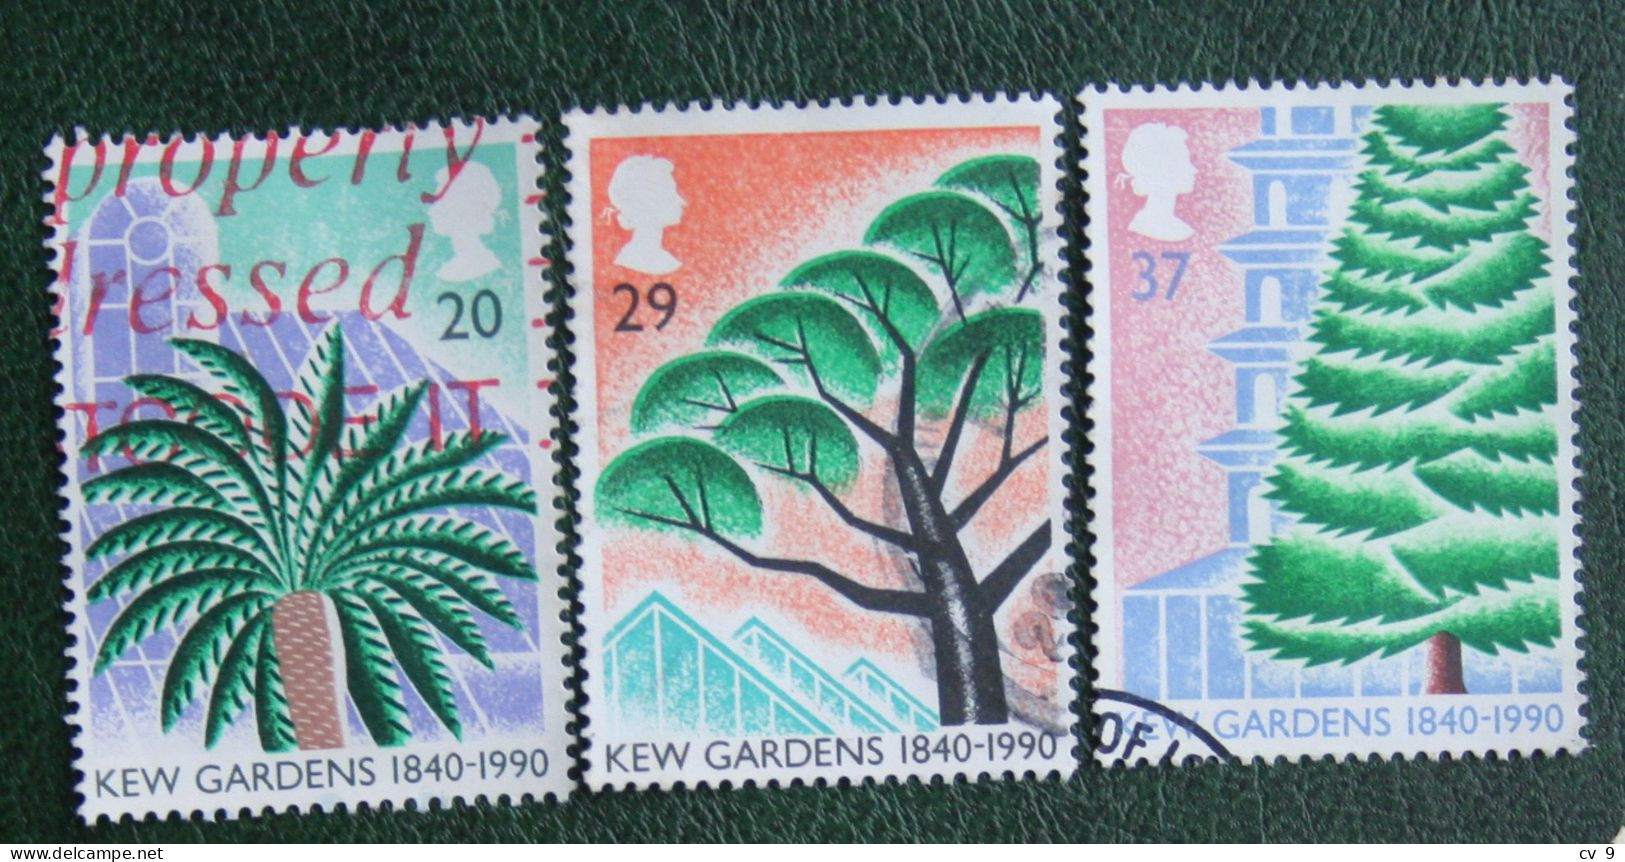 KEW GARDENS Tree Baume (Mi 1270-1271 1273) 1990 Used Gebruikt Oblitere ENGLAND GRANDE-BRETAGNE GB GREAT BRITAIN - Used Stamps